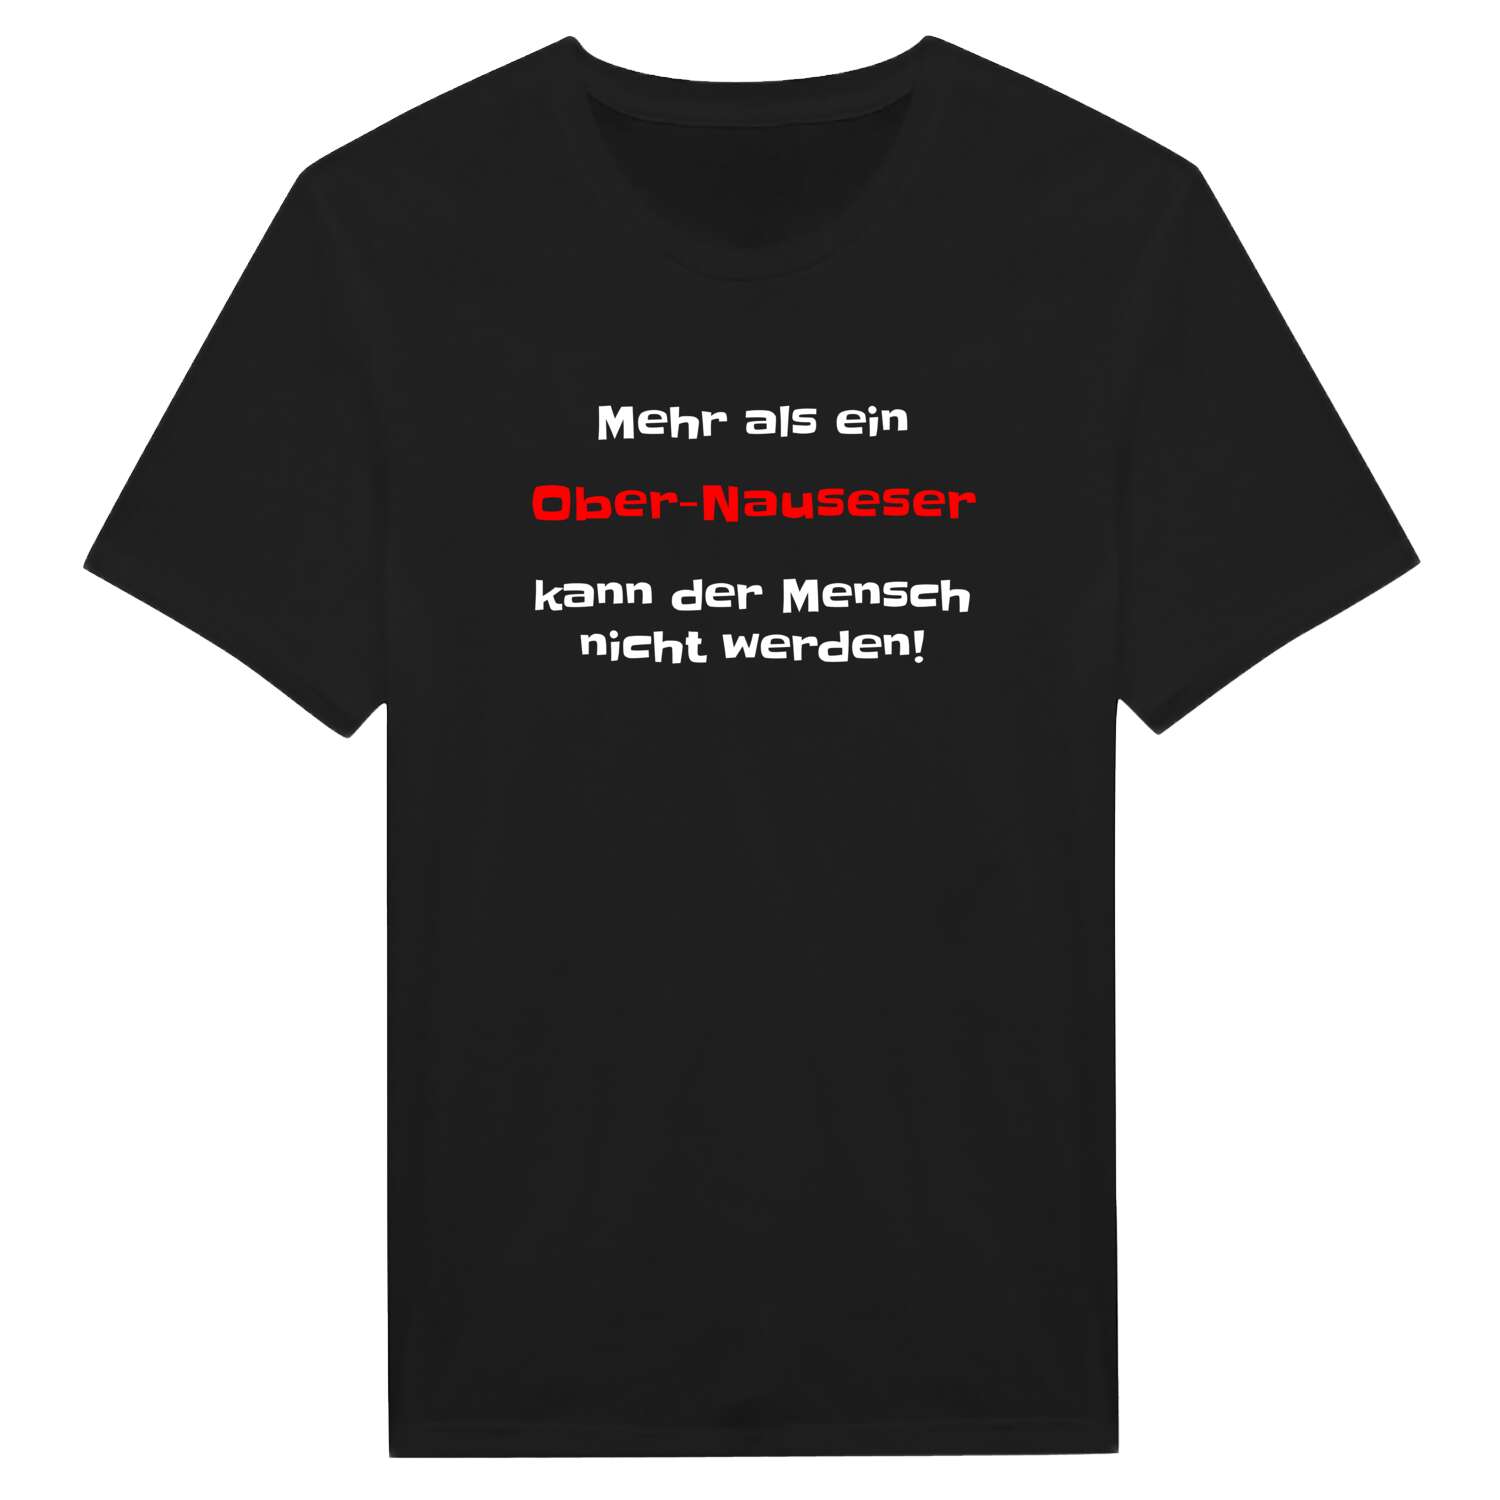 Ober-Nauses T-Shirt »Mehr als ein«